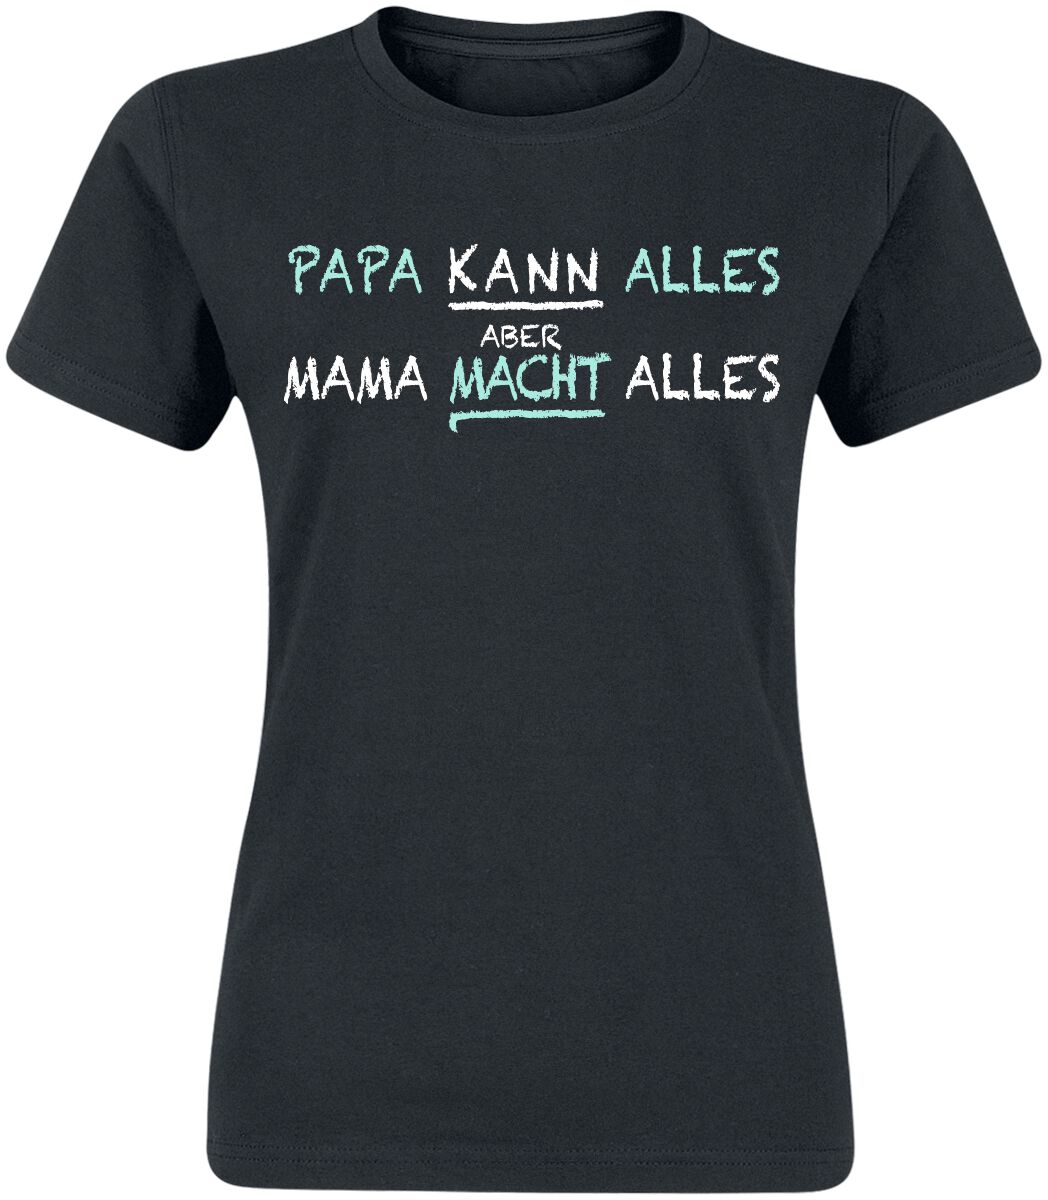 Familie & Freunde T-Shirt - Mama macht alles - S bis 3XL - für Damen - Größe 3XL - schwarz